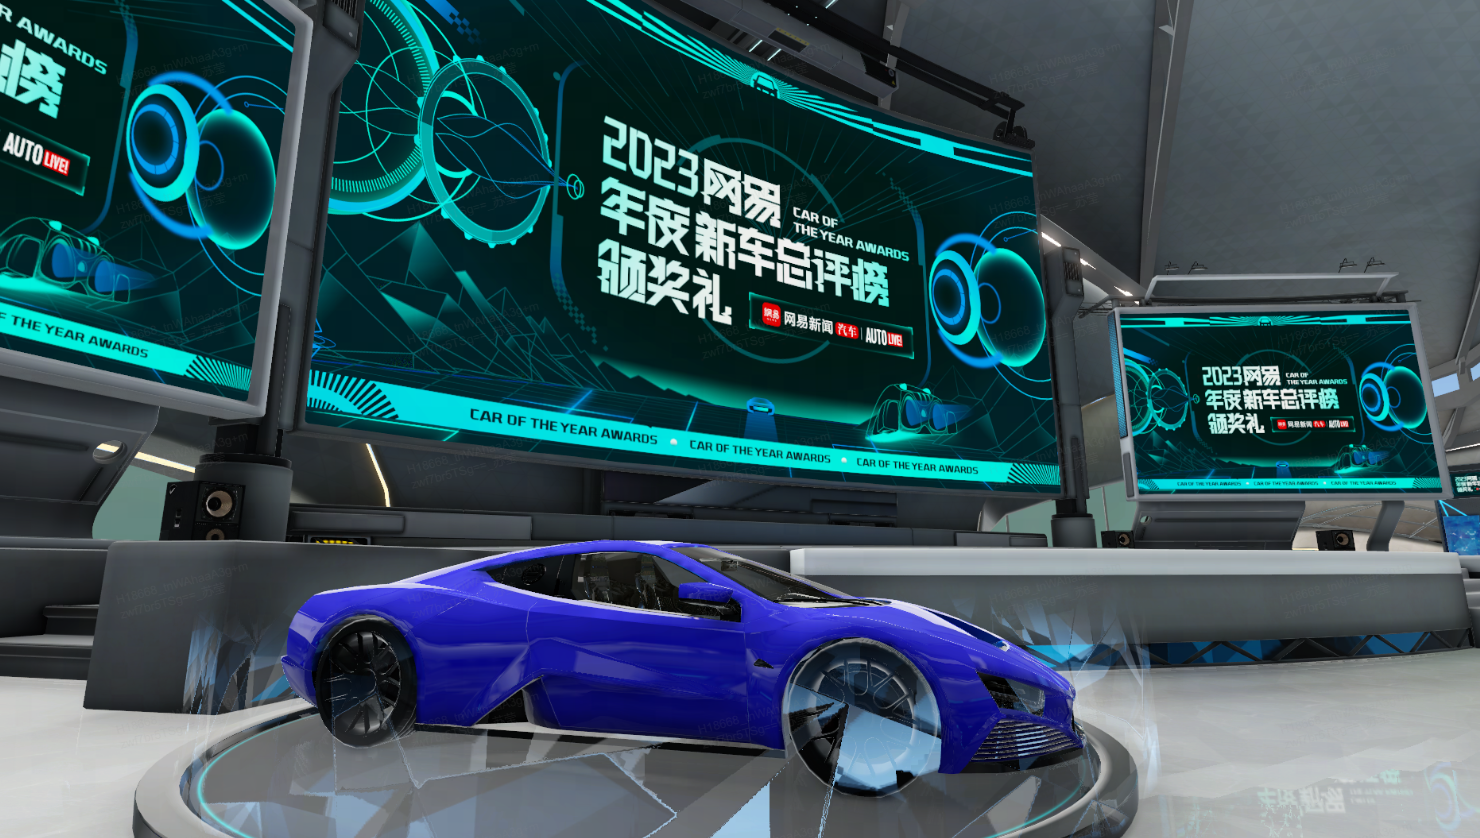 这是一款蓝色的现代概念跑车，展示在一个有多个显示屏和未来风格图案的高科技环境中。